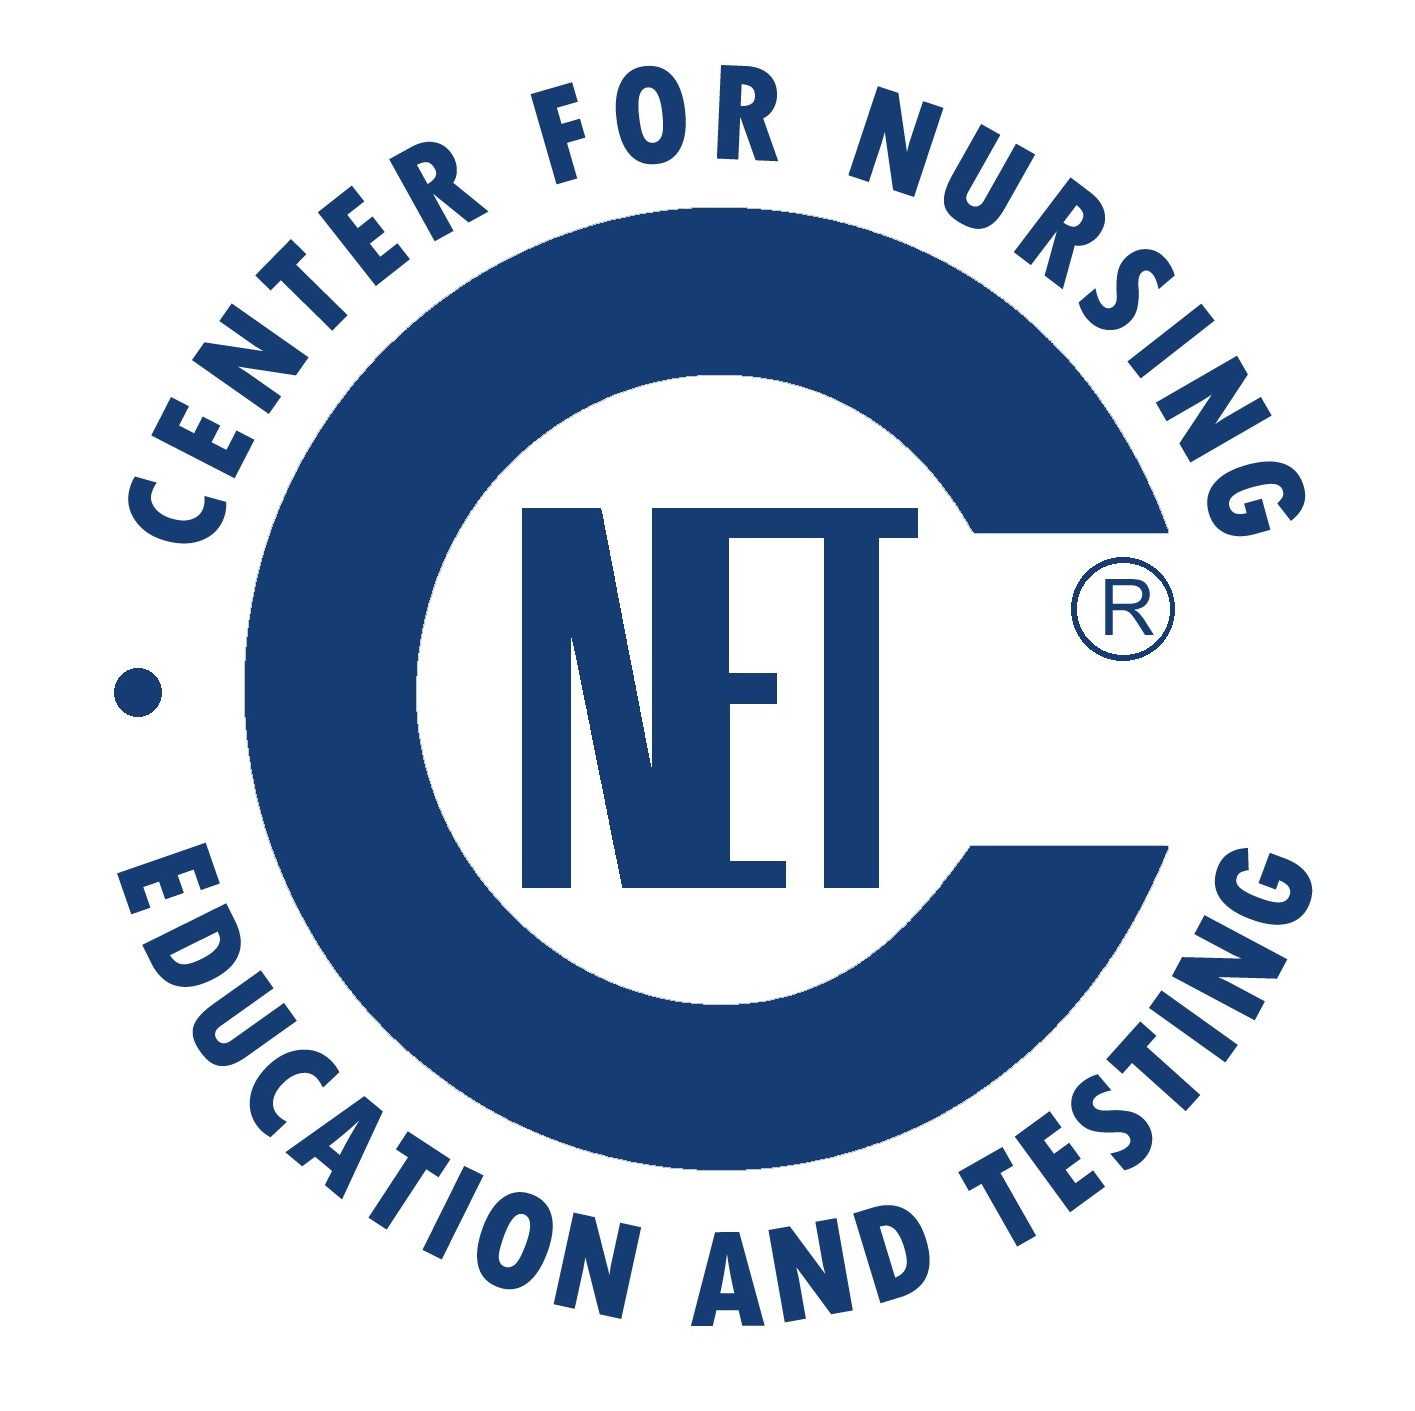 https://www.nursingcertification.org/resources/conference/sponsor/cnet.jpg